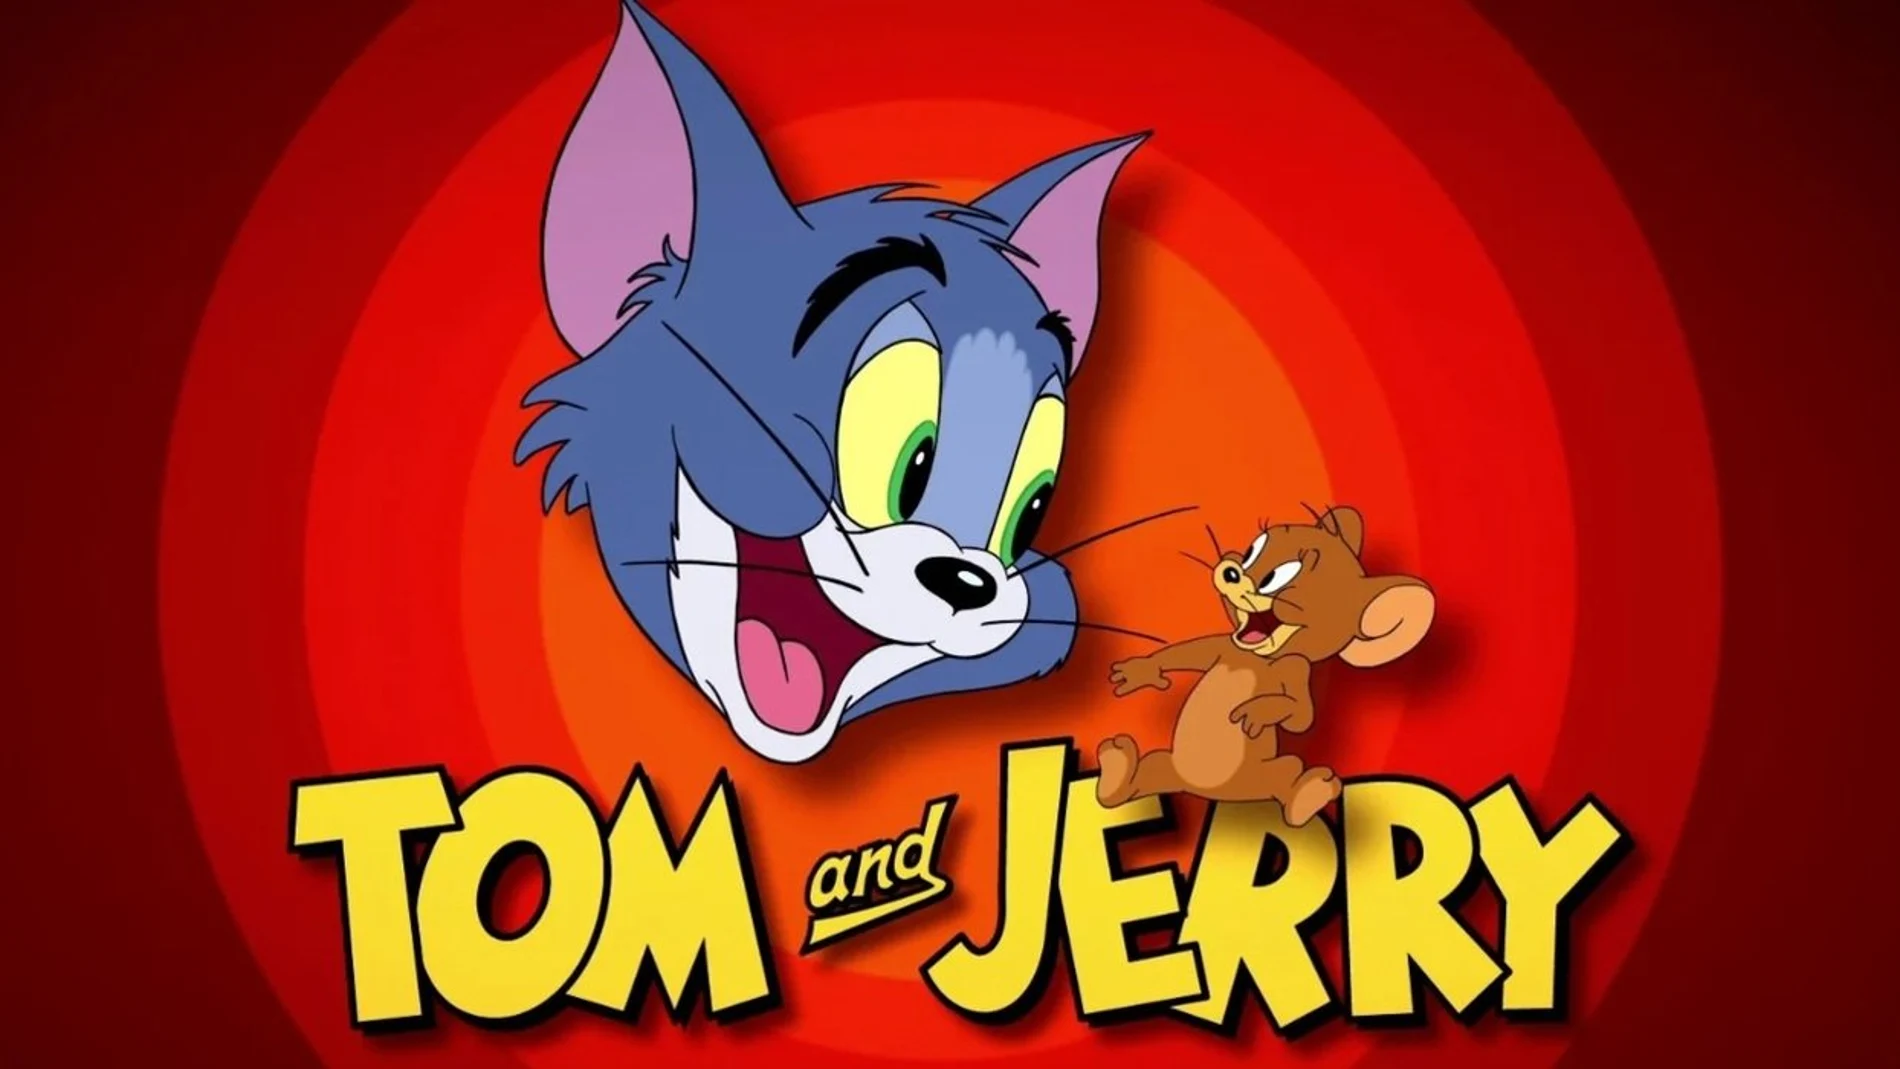 La curiosa historia de “Tom y Jerry”